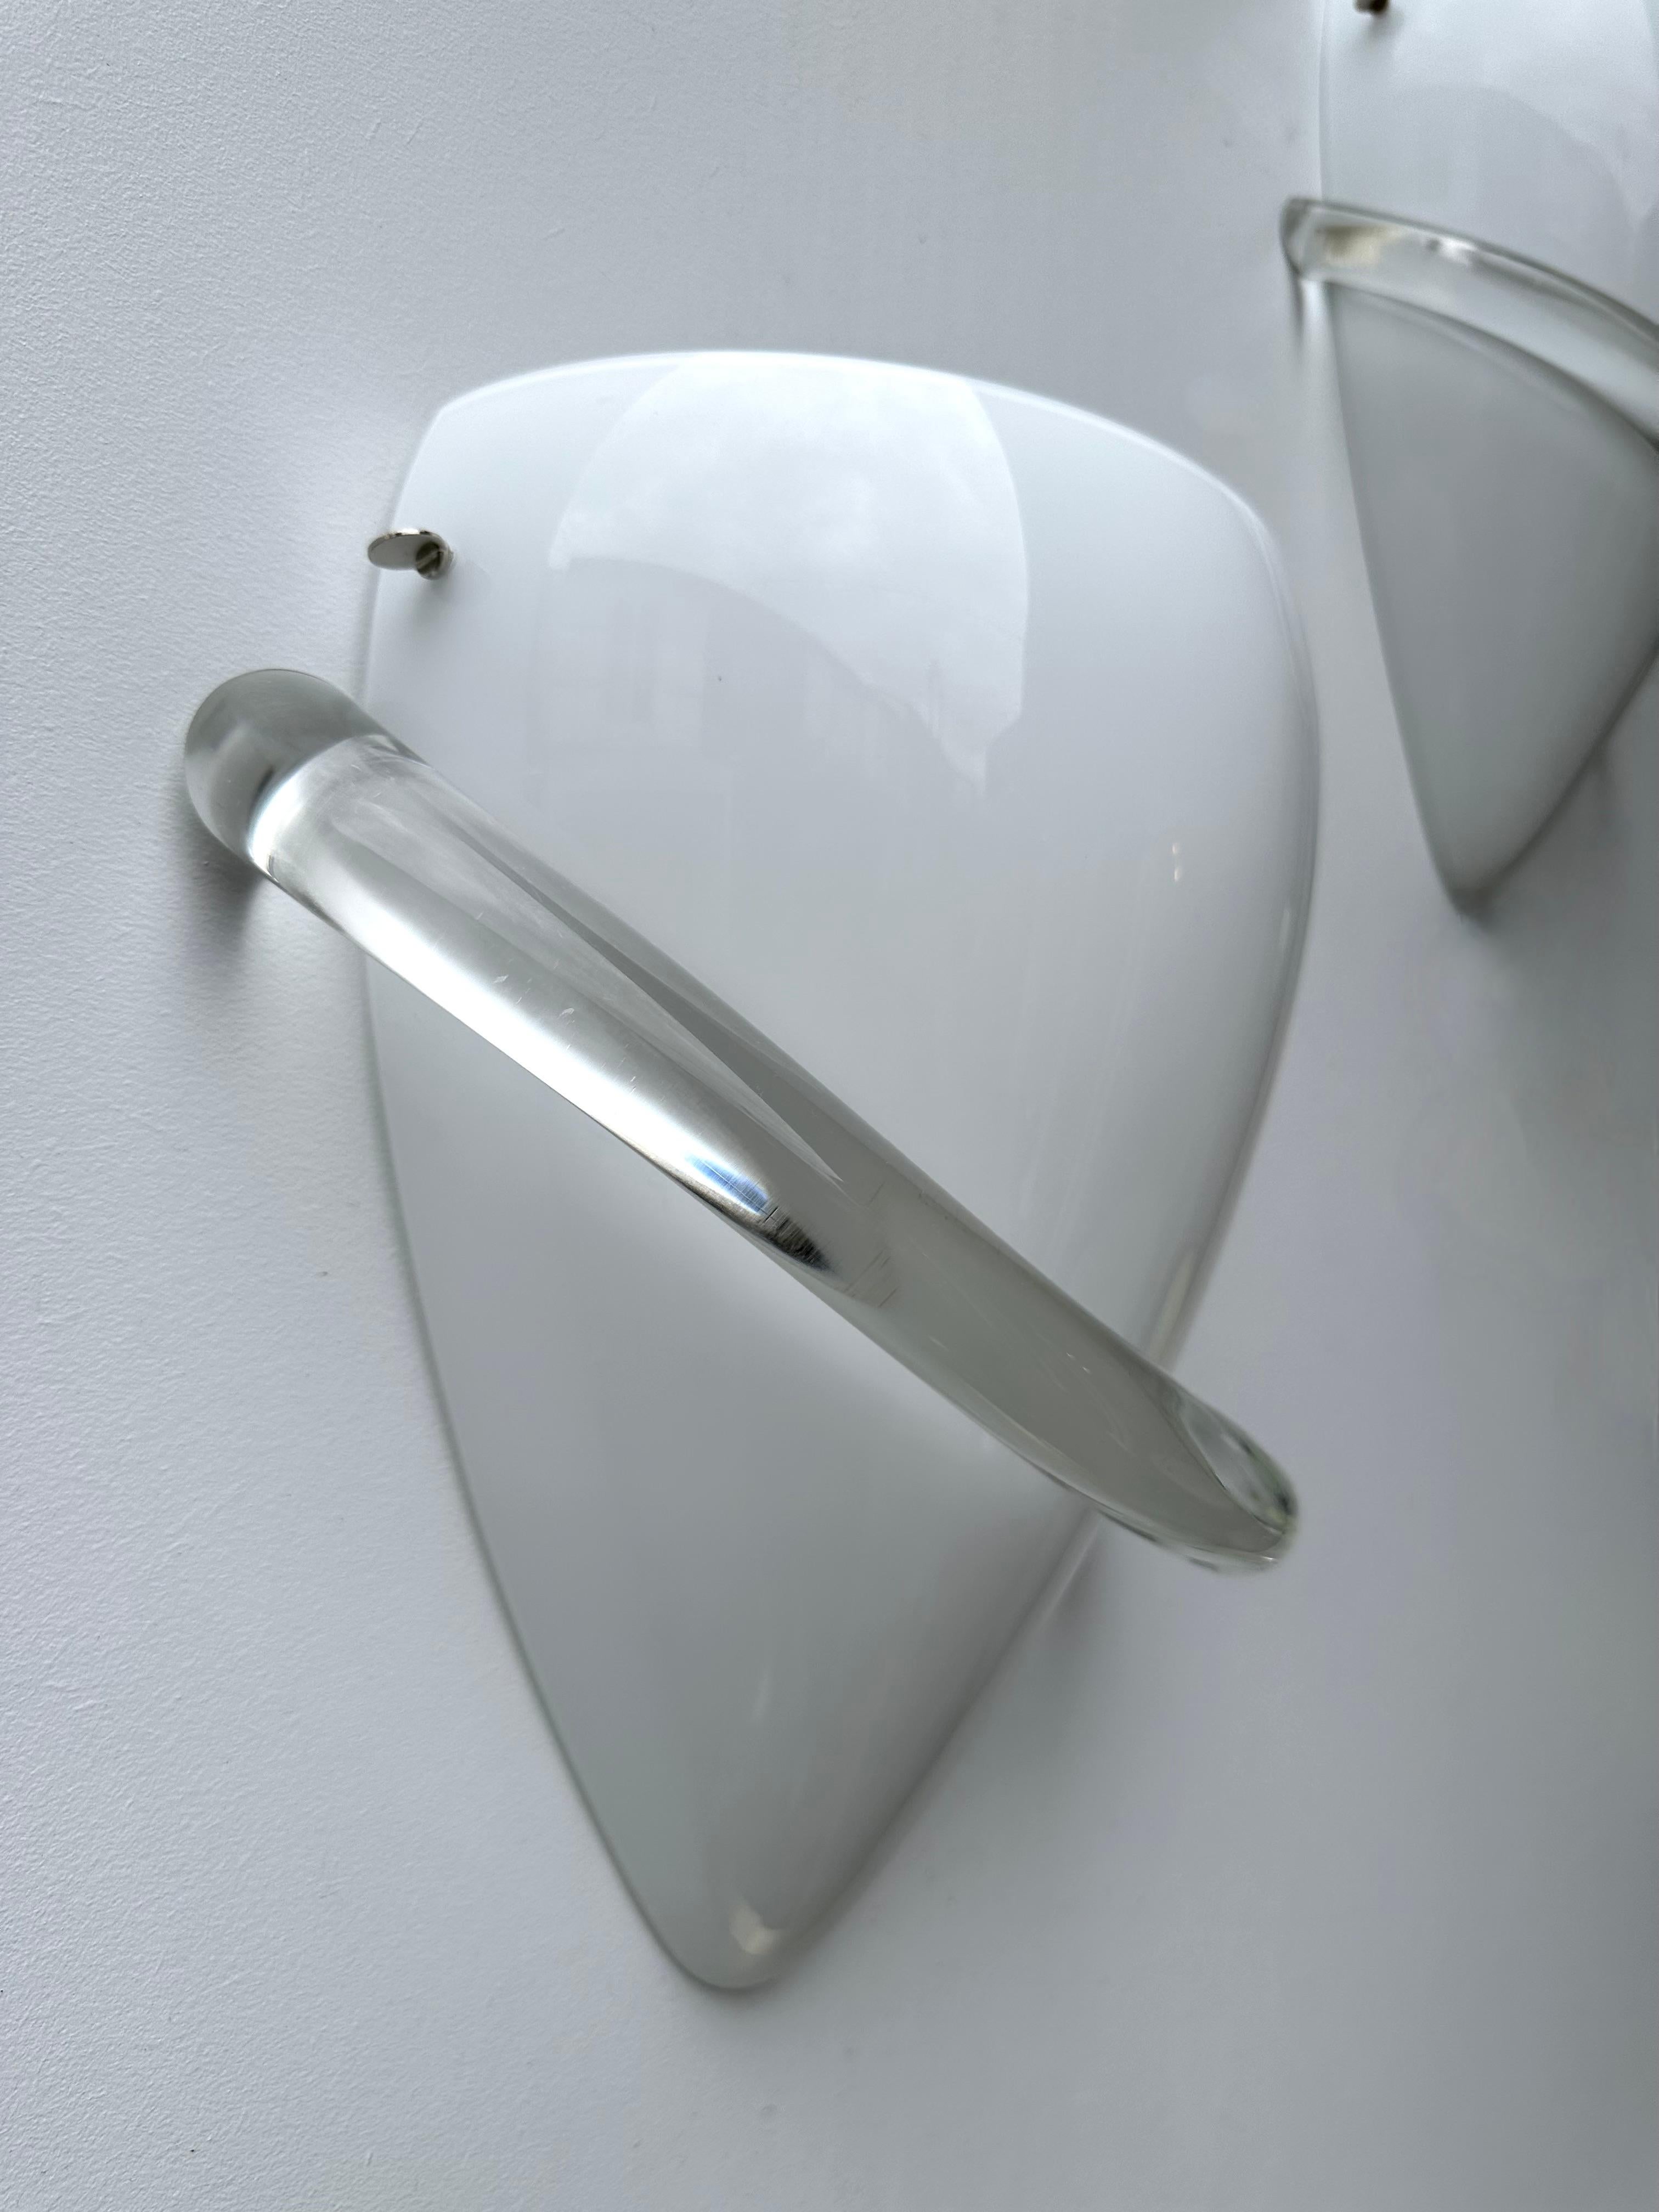 Paar Wandlampen Modell Swan aus weißem und klarem Murano-Glas, von der Designerin Tina Aufiero für die italienische Designmanufaktur Venini. signiert und datiert 1995. Berühmtes Design wie Carlo Aldo Nason für Mazzega, Vistosi, La murrina, Poliarte,